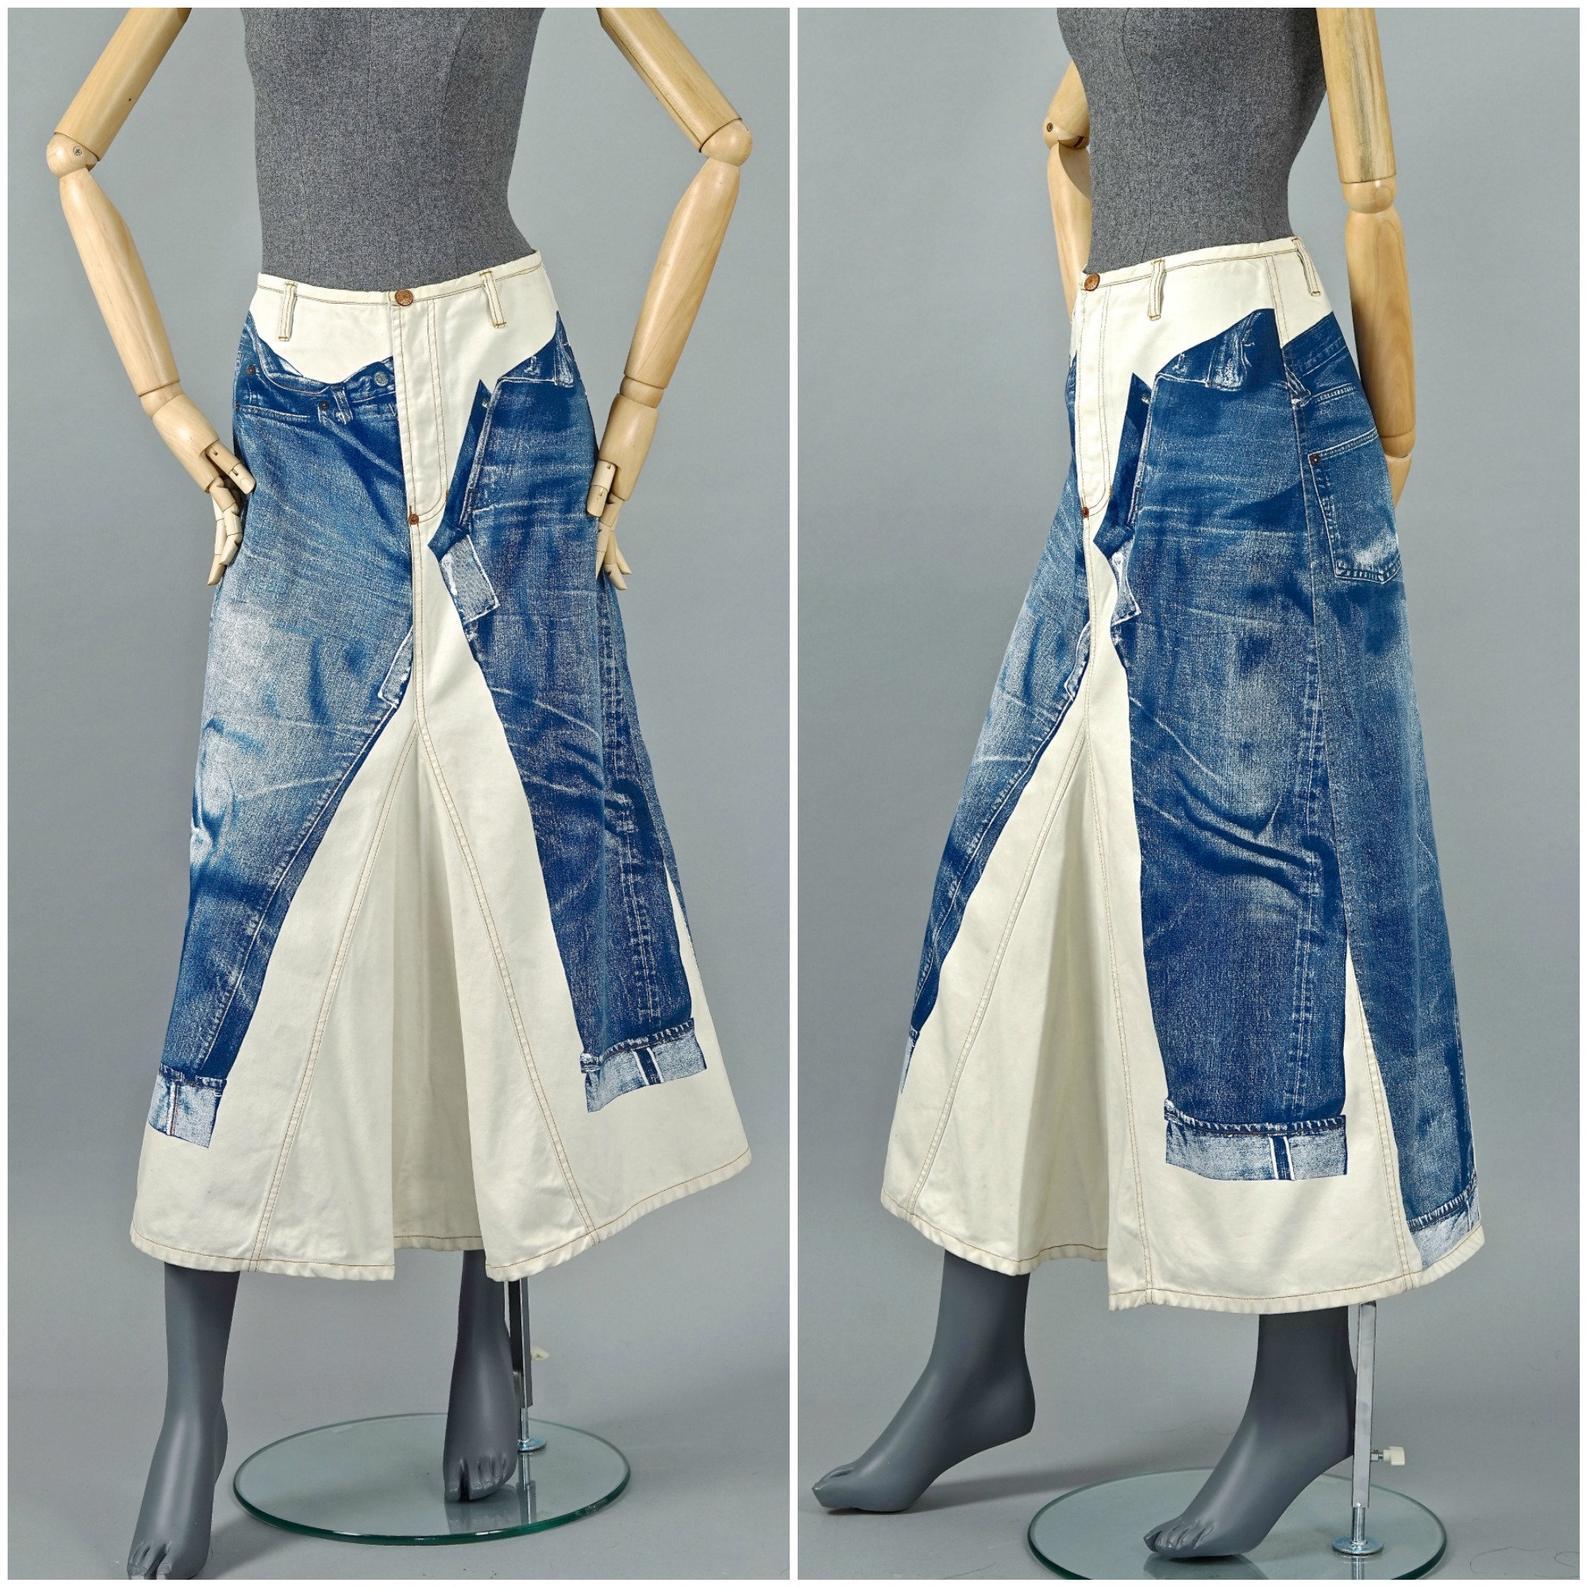 Vintage JEAN PAUL GAULTIER Trompe L'oeil Illusion Denim Pants Skirt

Measurements taken laid flat, please double waist and hips:
Waist: 13.38 inches (34 cm)
Hips: 20.07 inches (51 cm)
Length: 35.03 inches (89 cm)

Features:
- 100% Authentic JEAN